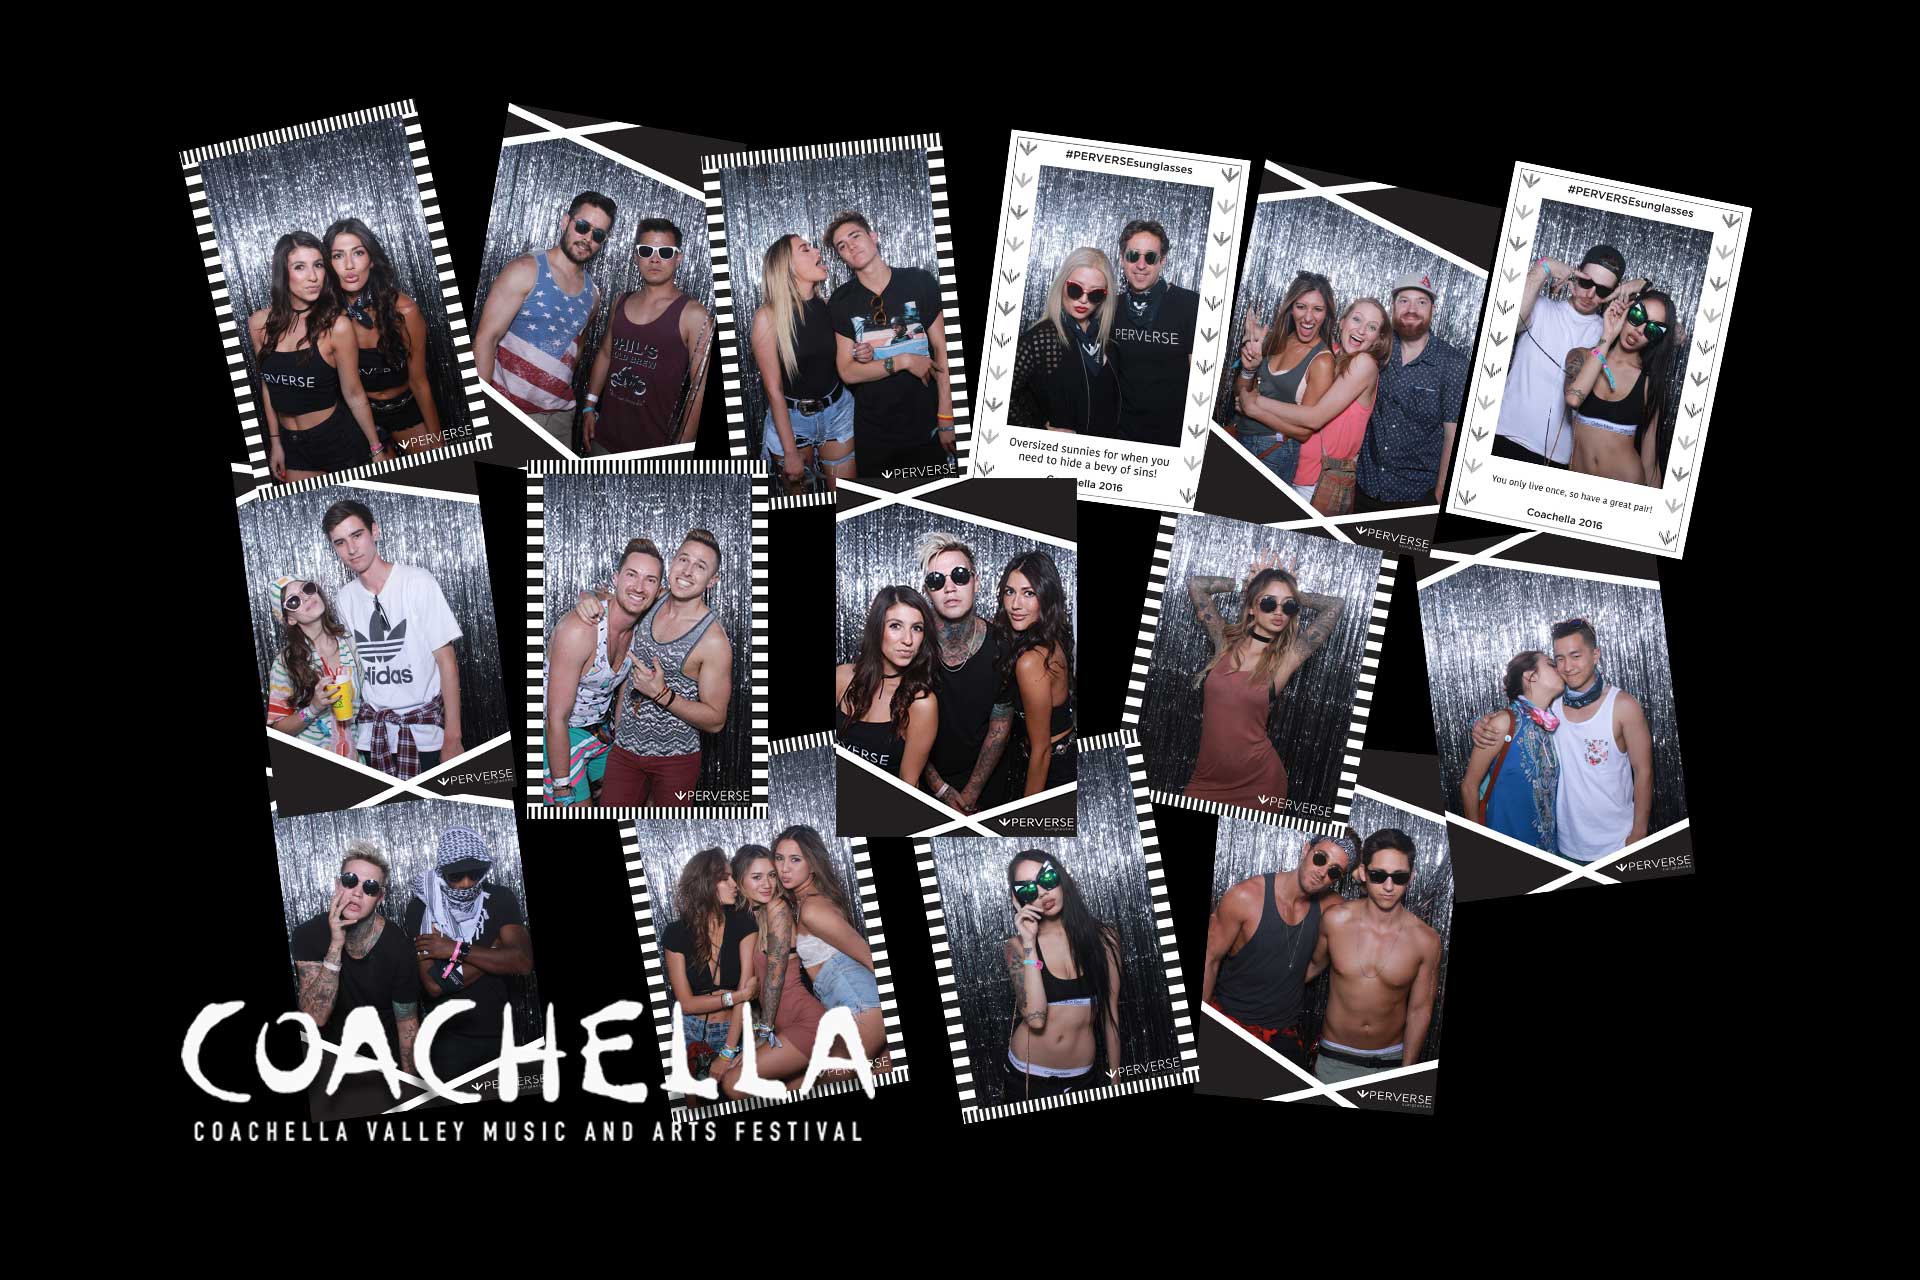 “Coachella